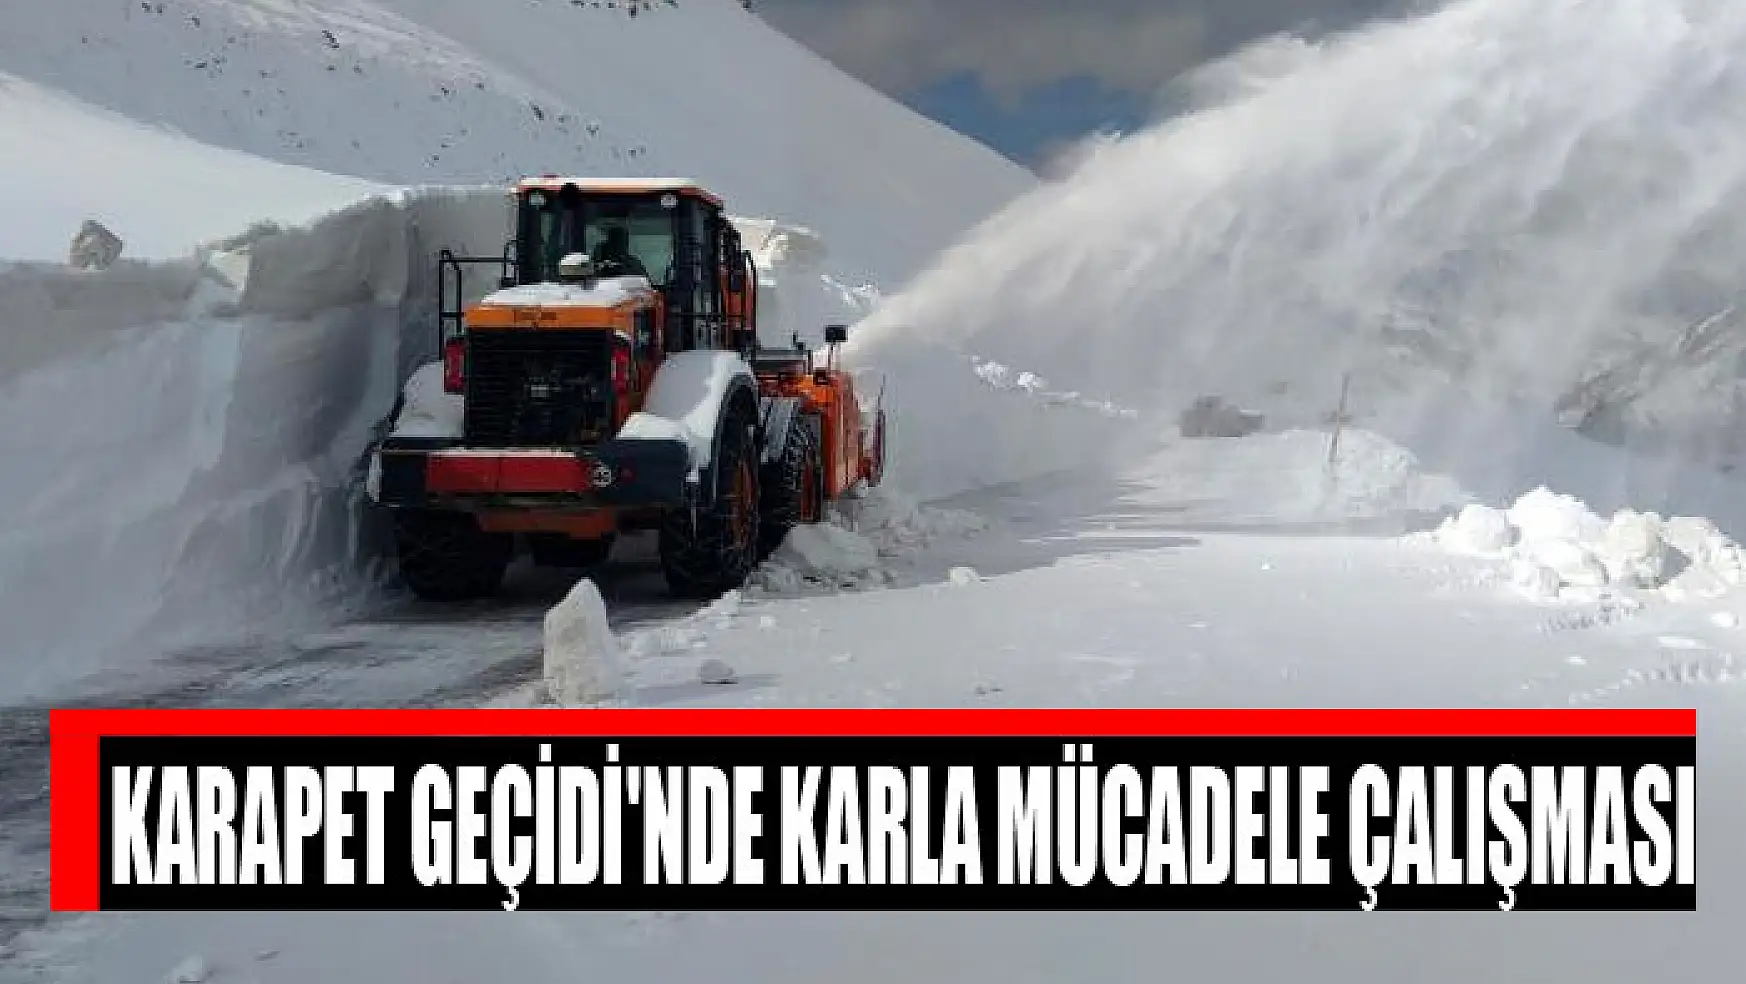 Karapet Geçidi'nde karla mücadele çalışması